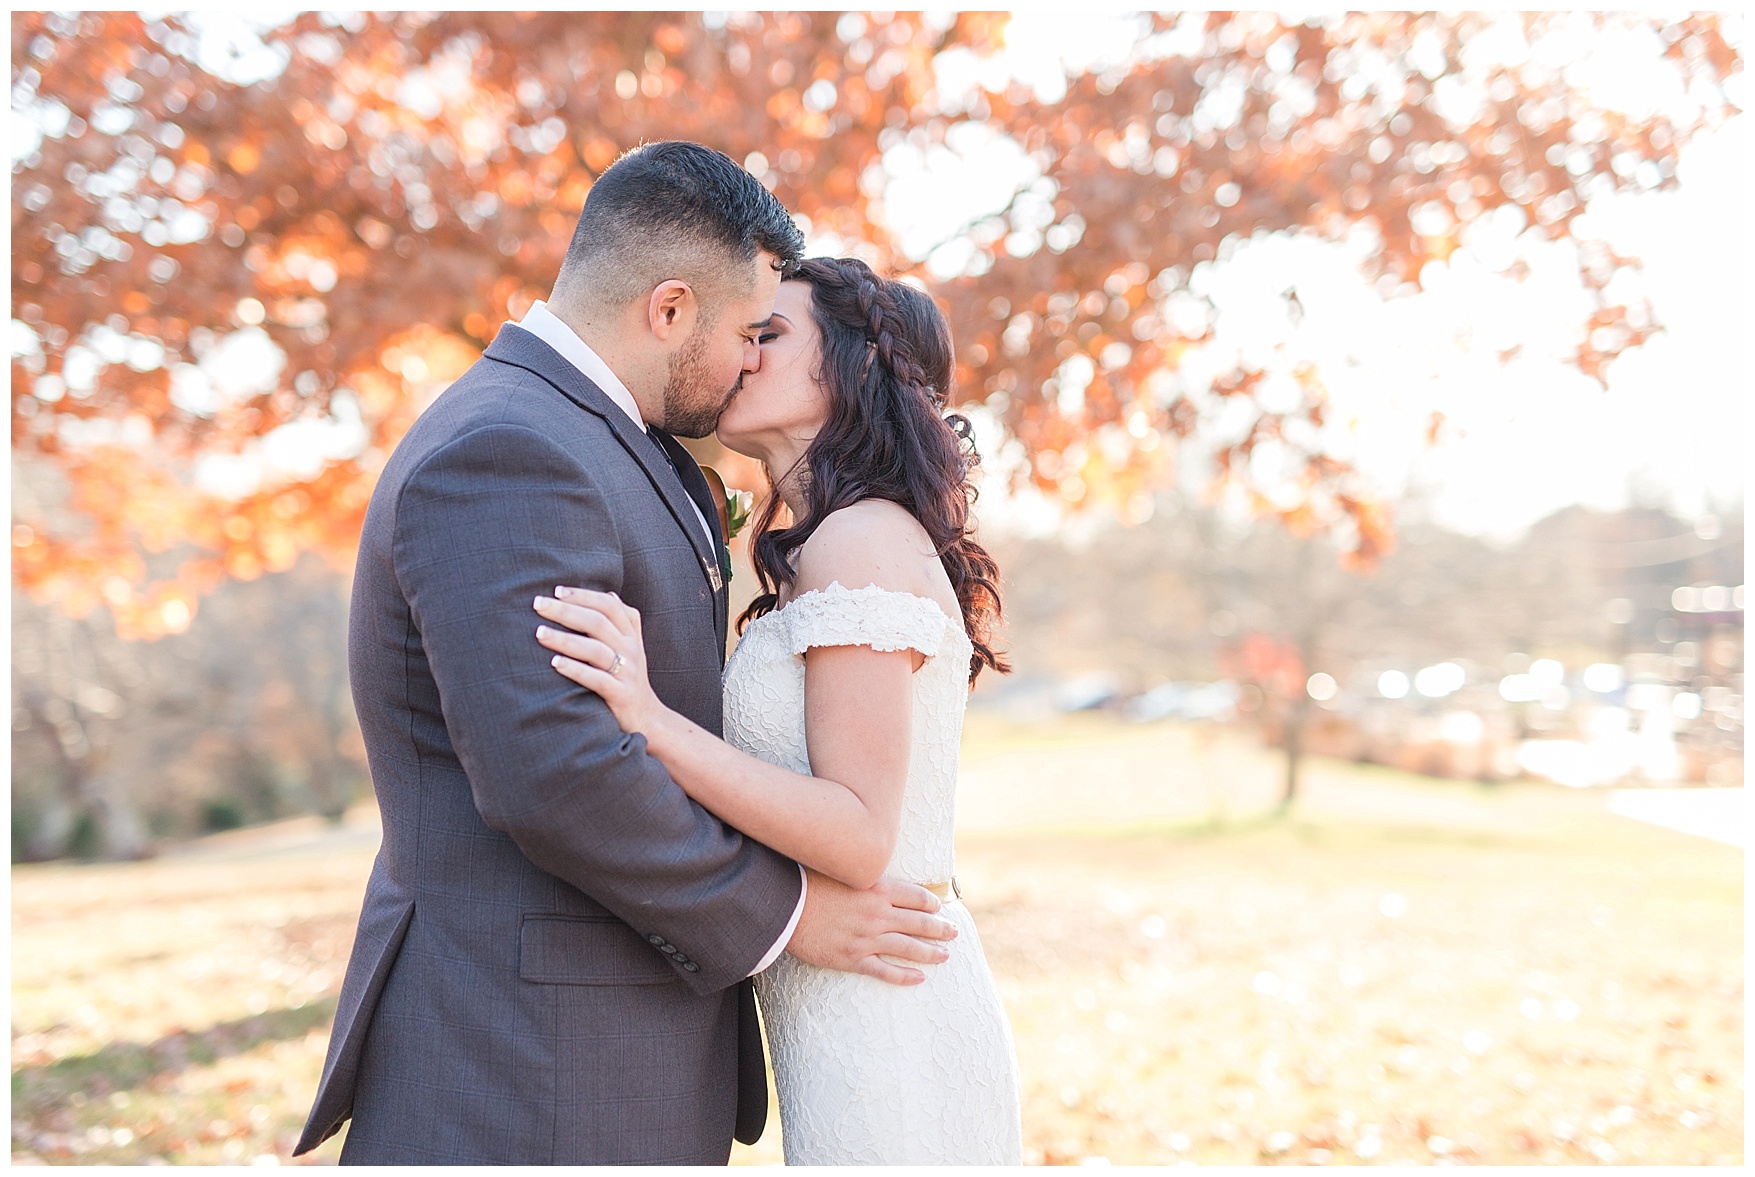 Fall elopement in Lynchburg, Virginia || Central Virginia Wedding Photographer || www.ashleyeiban.com